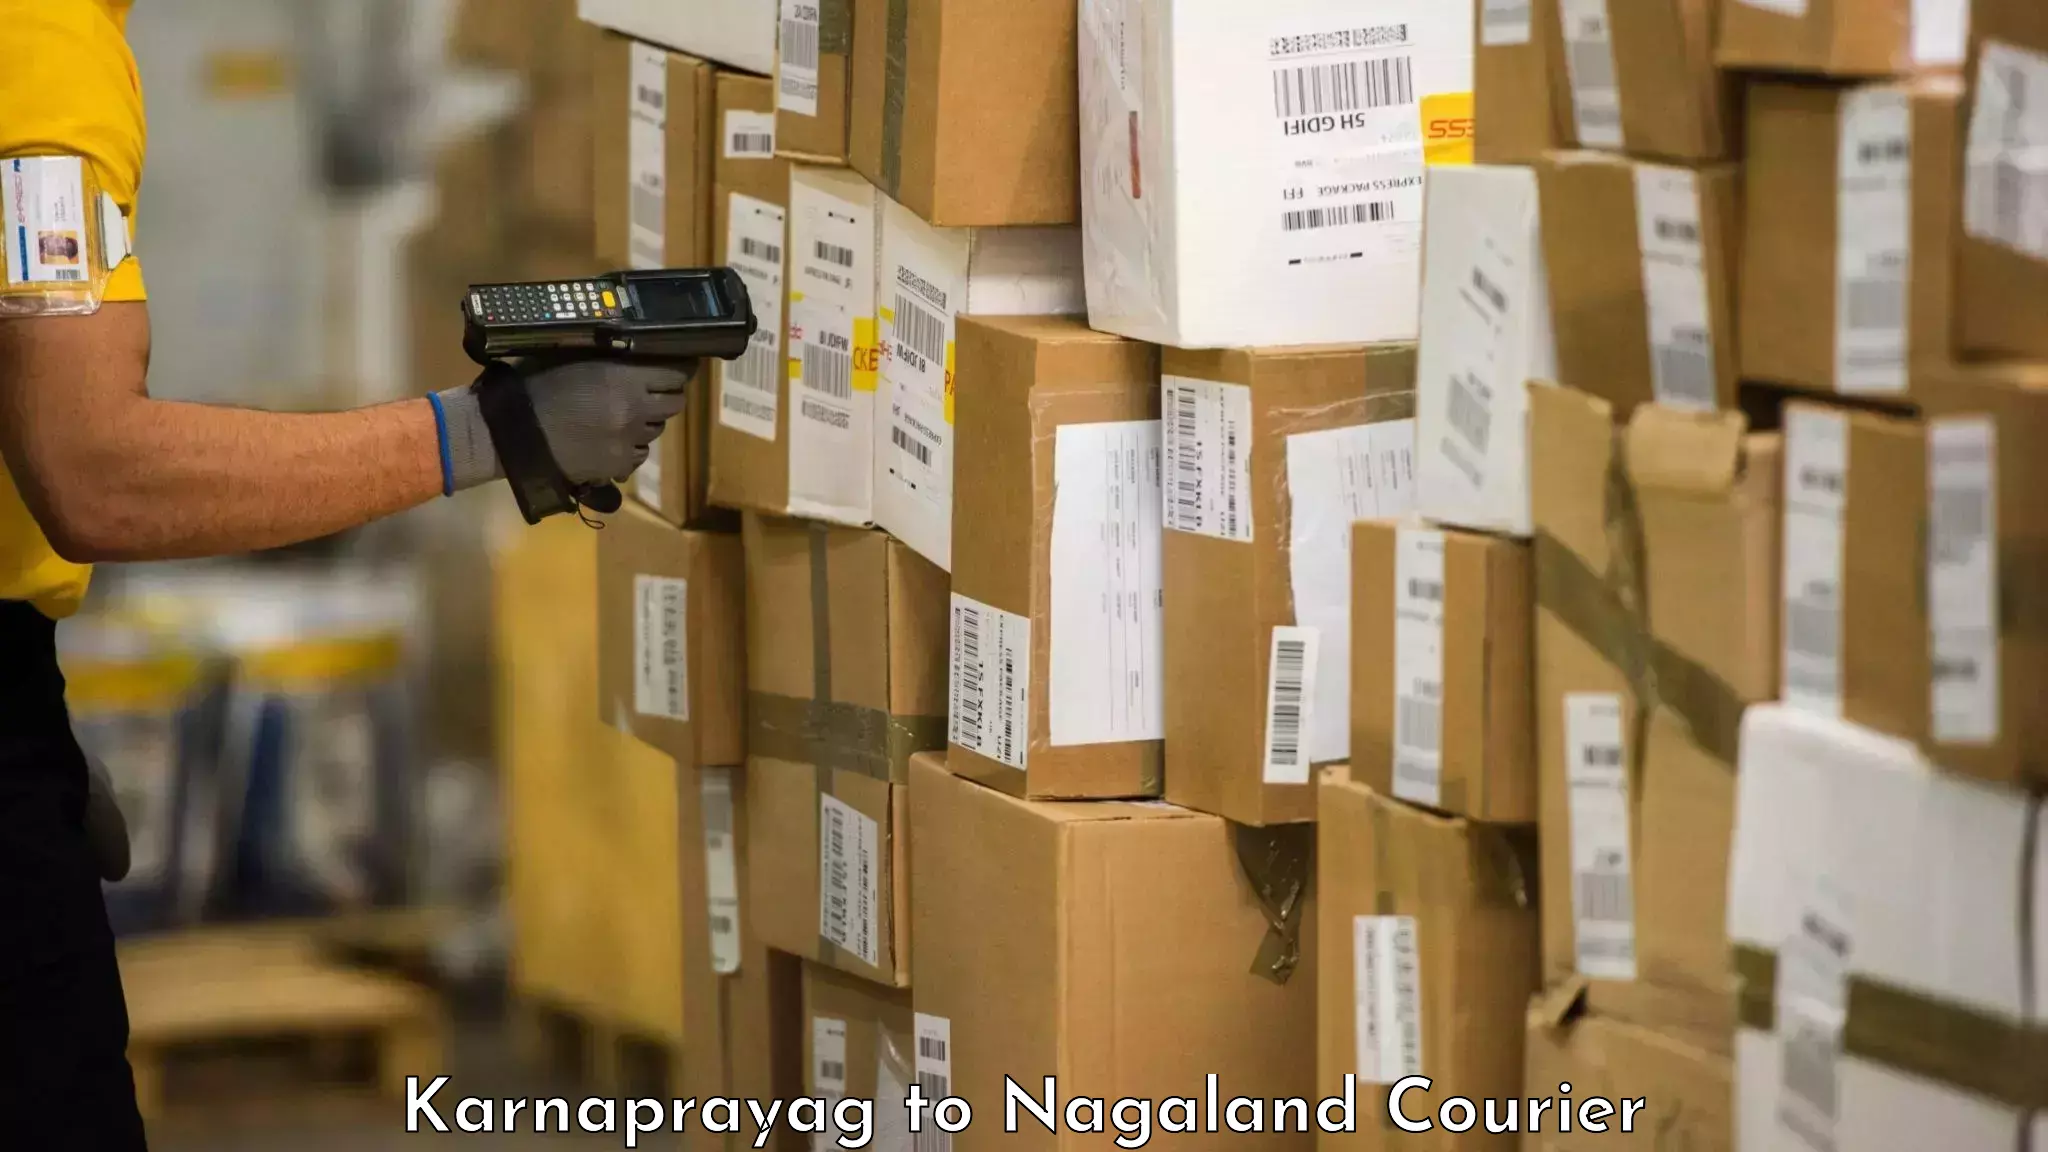 Baggage transport innovation Karnaprayag to Mon